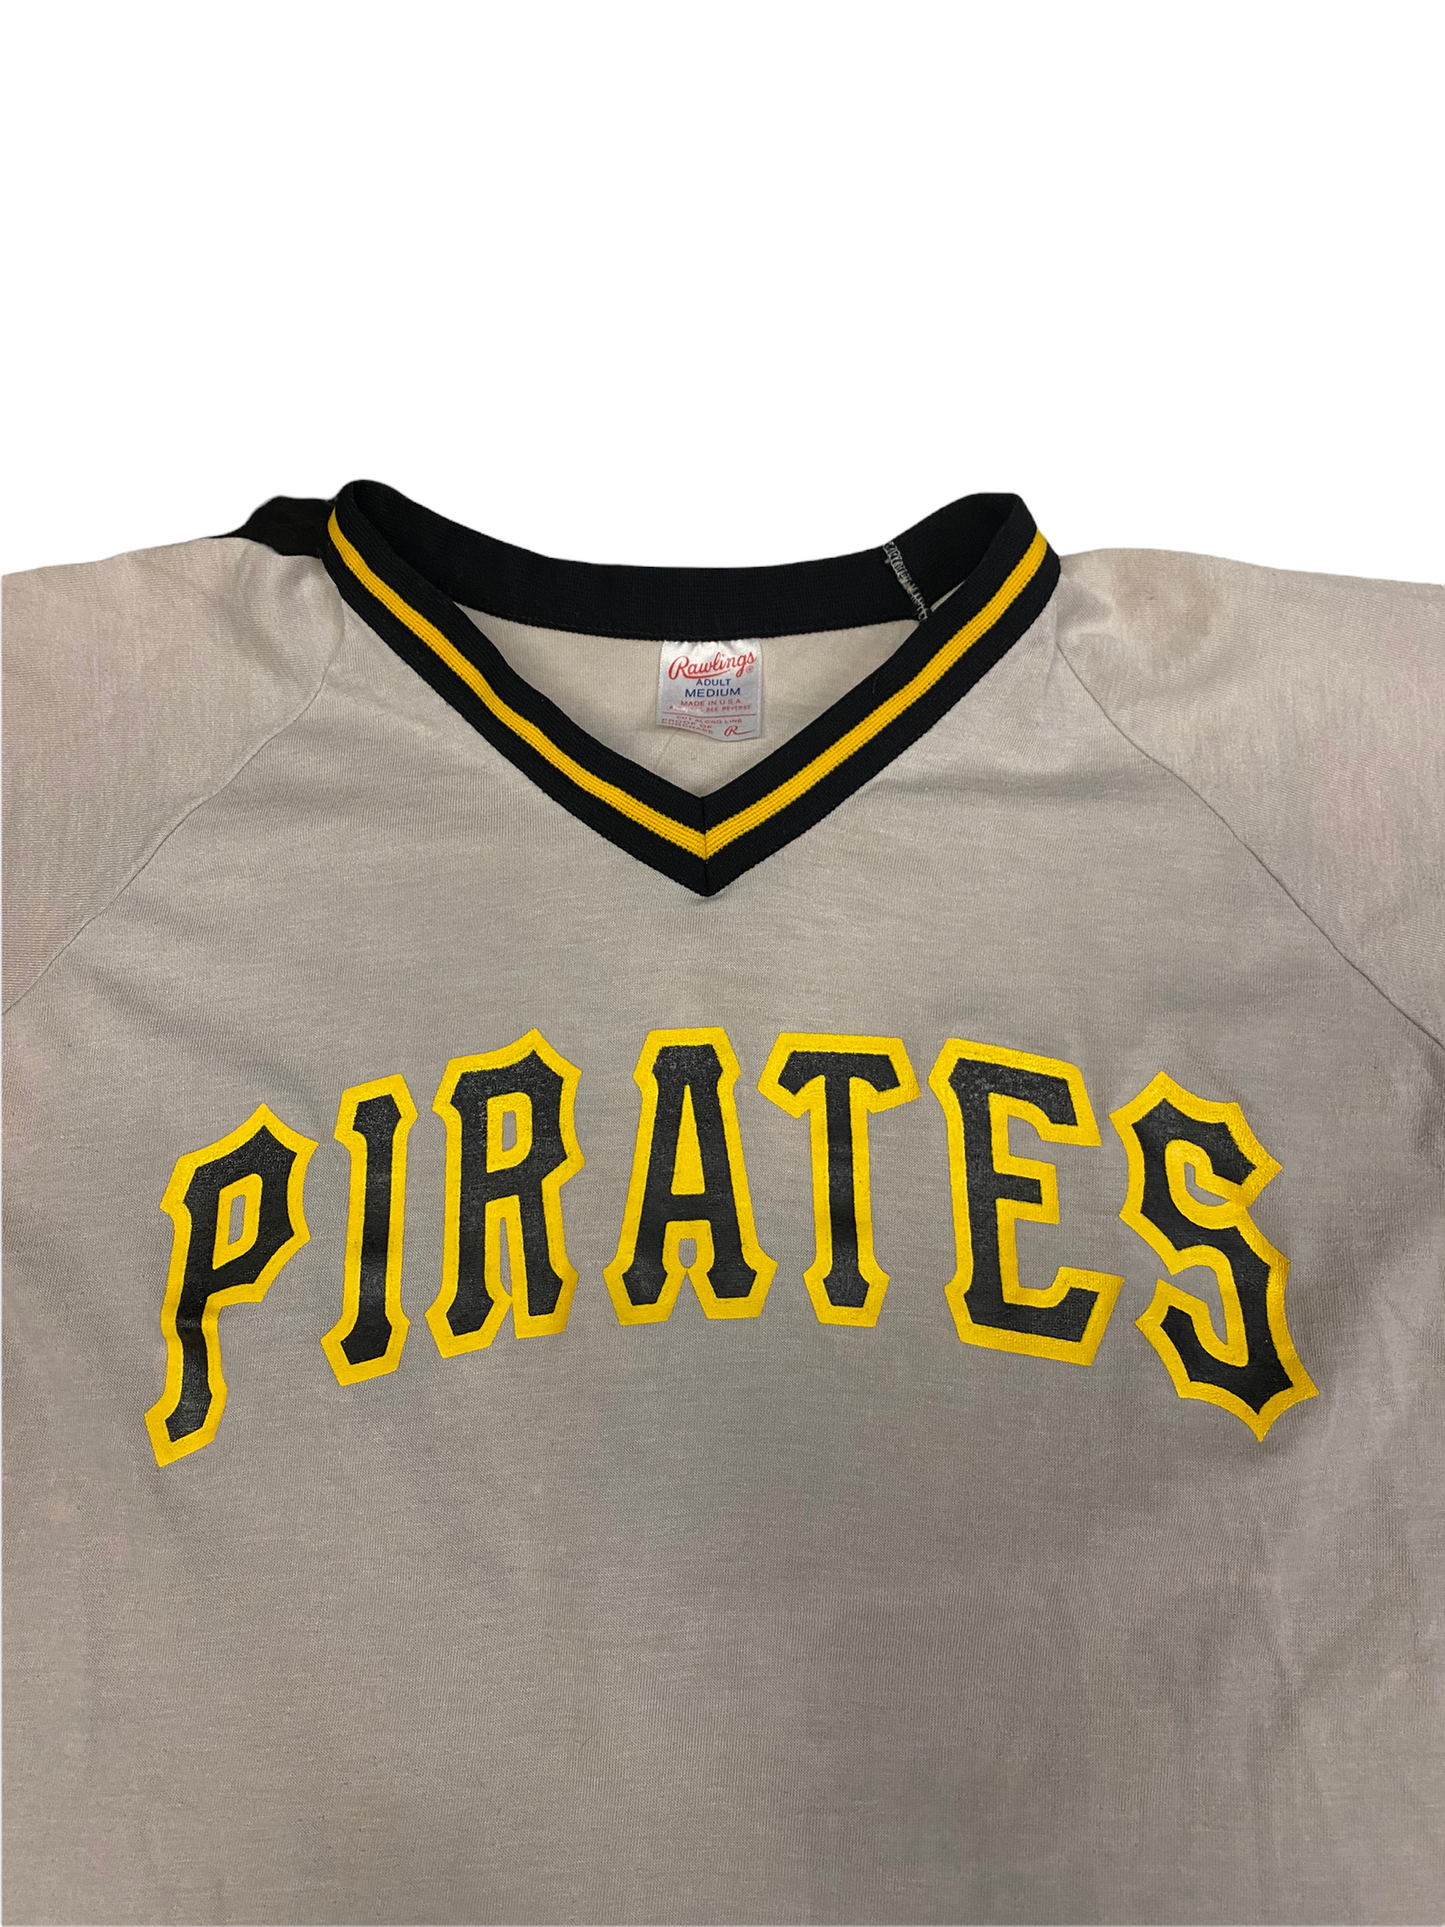 Vintage Pittsburgh Pirates Jersey Medium